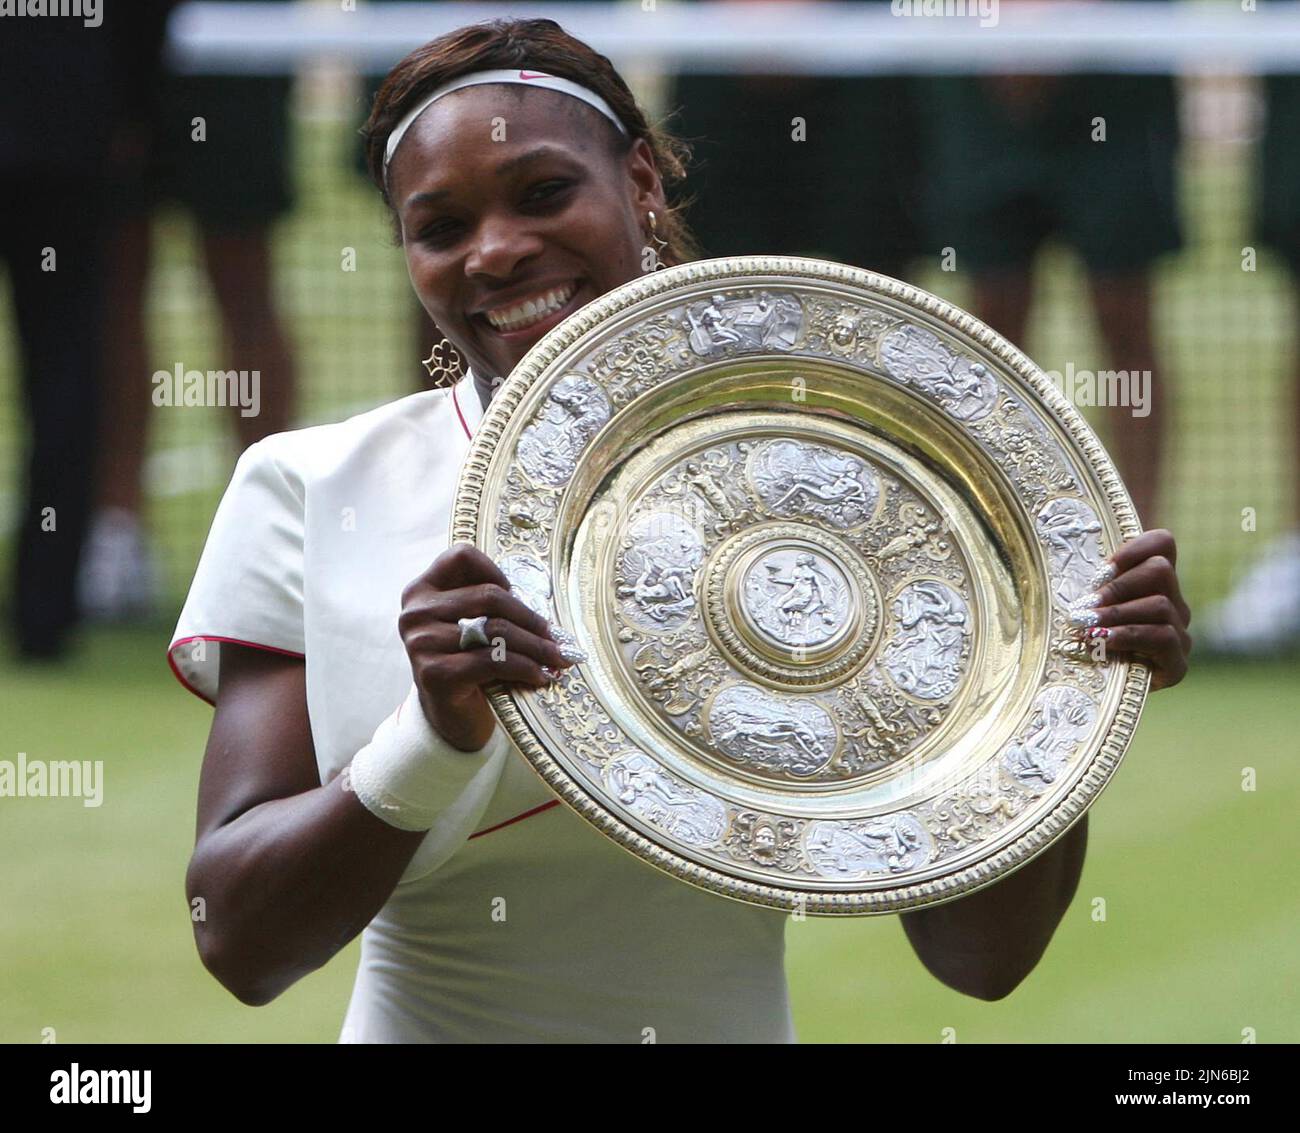 Foto de archivo de fecha 03-07-2010 de Serena Williams, quien ha anunciado su inminente retiro del tenis. Fecha de emisión: Martes 9 de Agosto, 2022. Foto de stock